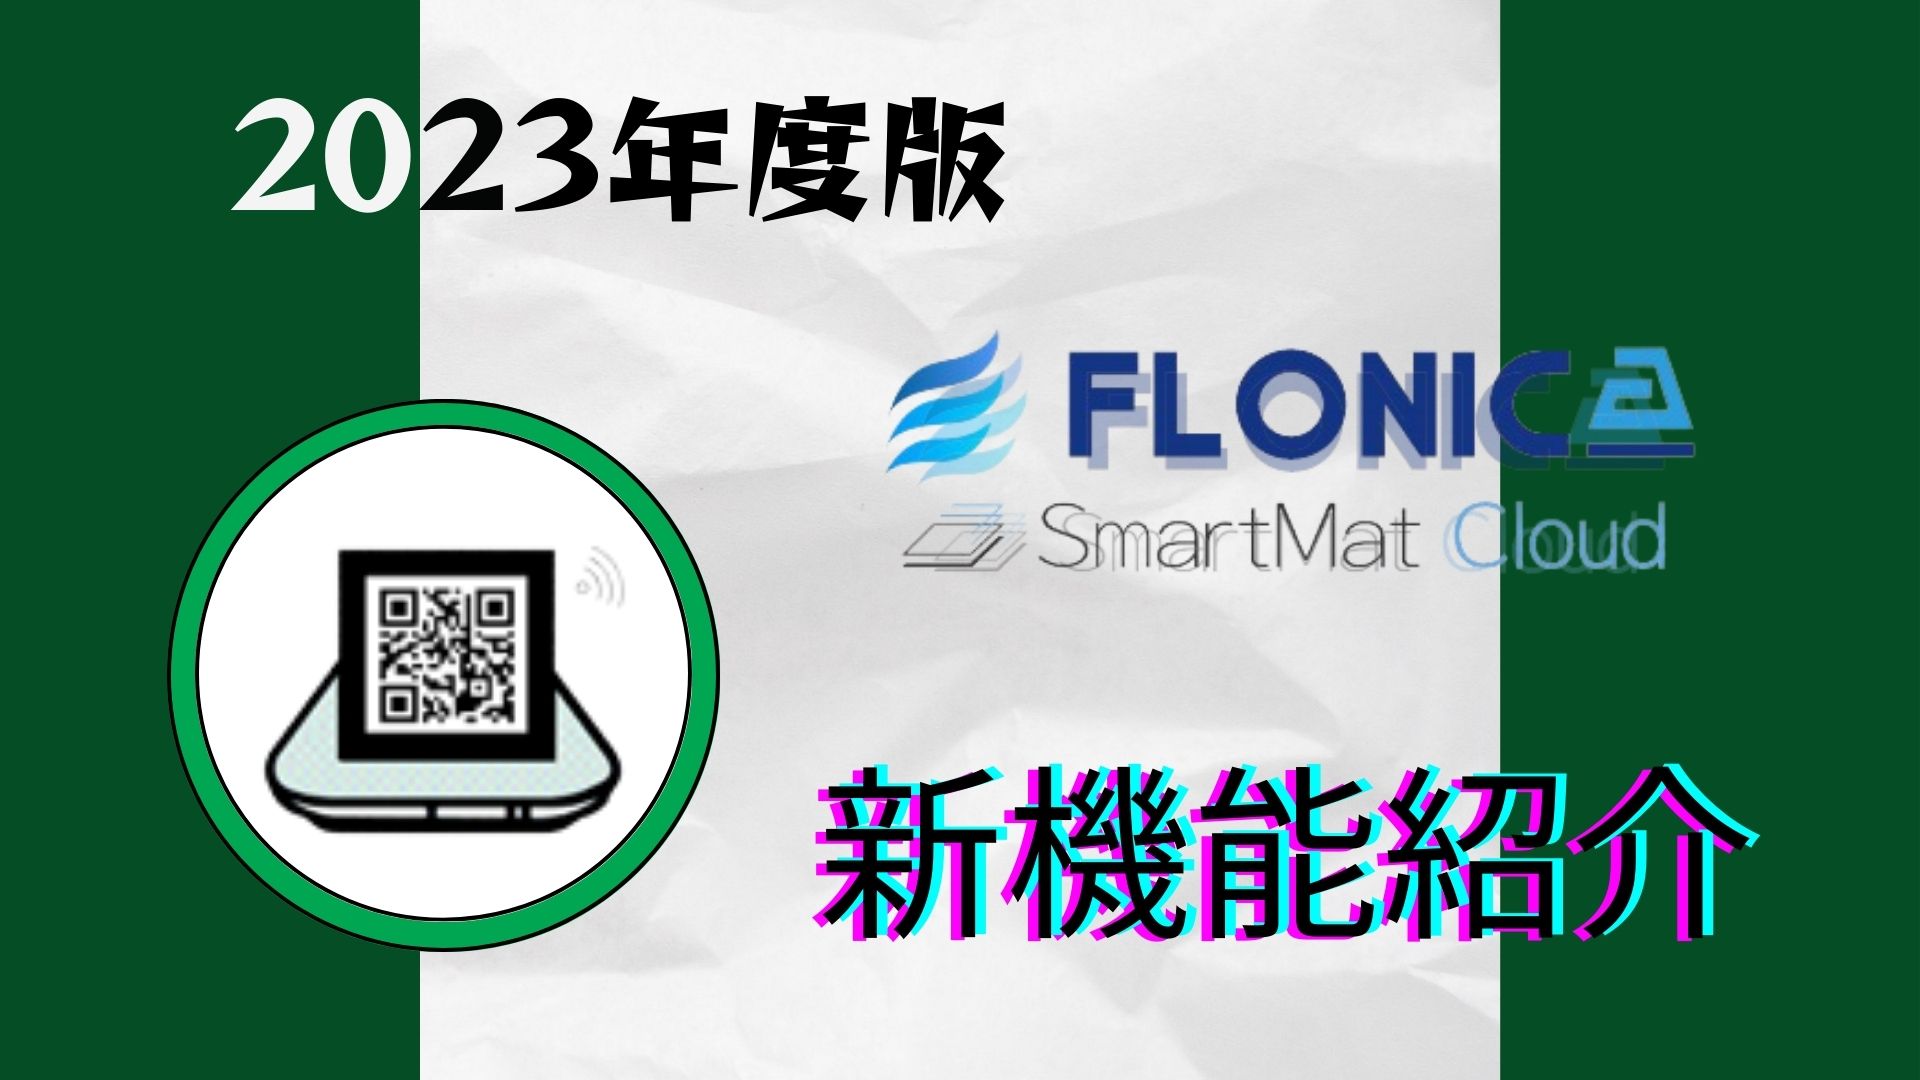 SmartmatCloud（スマートマットクラウド）-2023新機能紹介①-